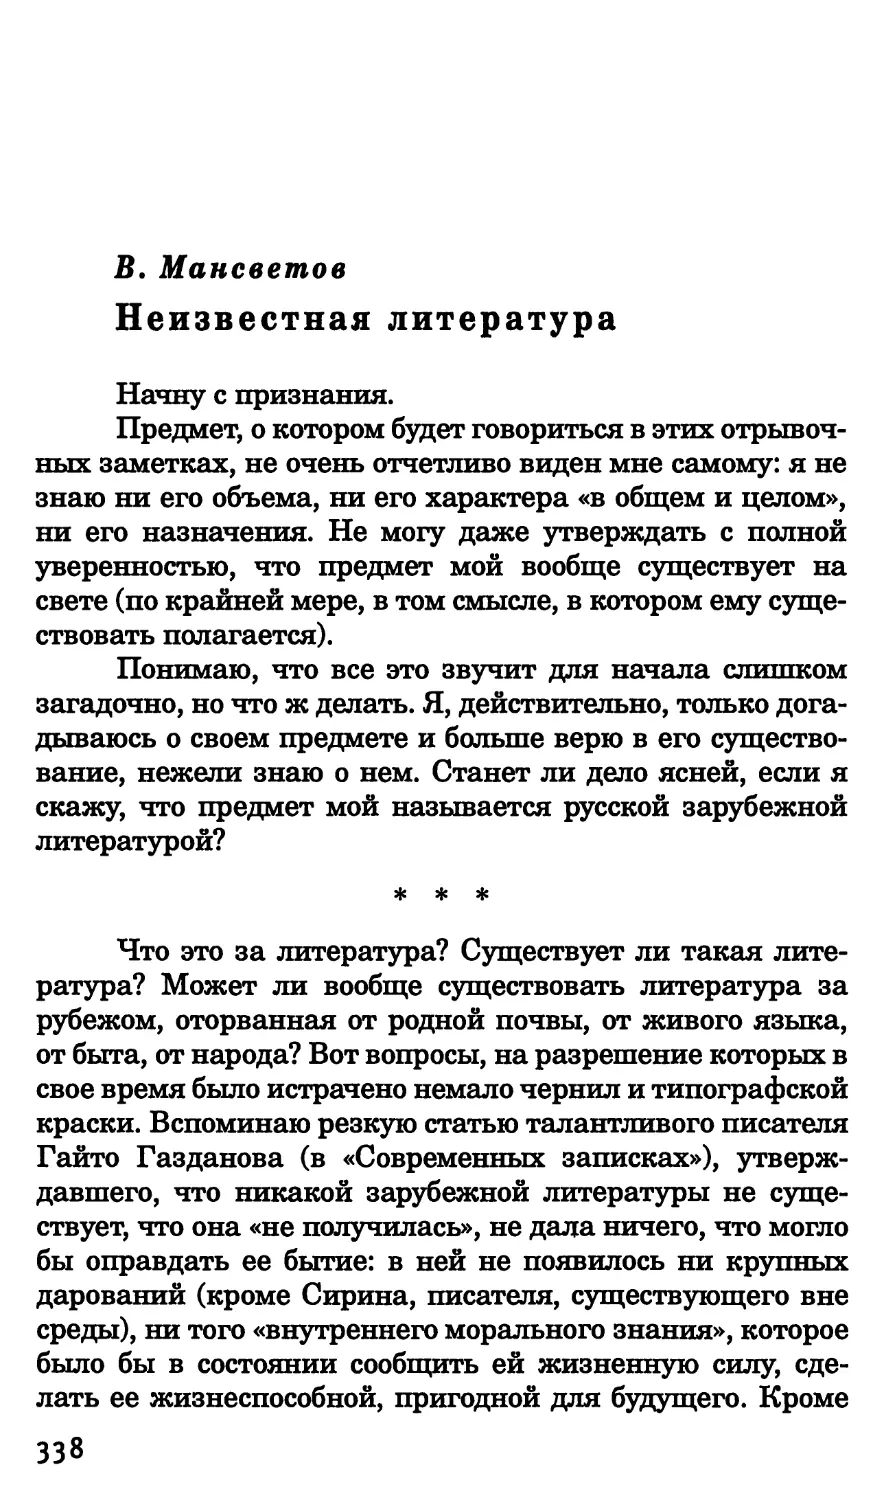 В. Мансветов. Неизвестная литература